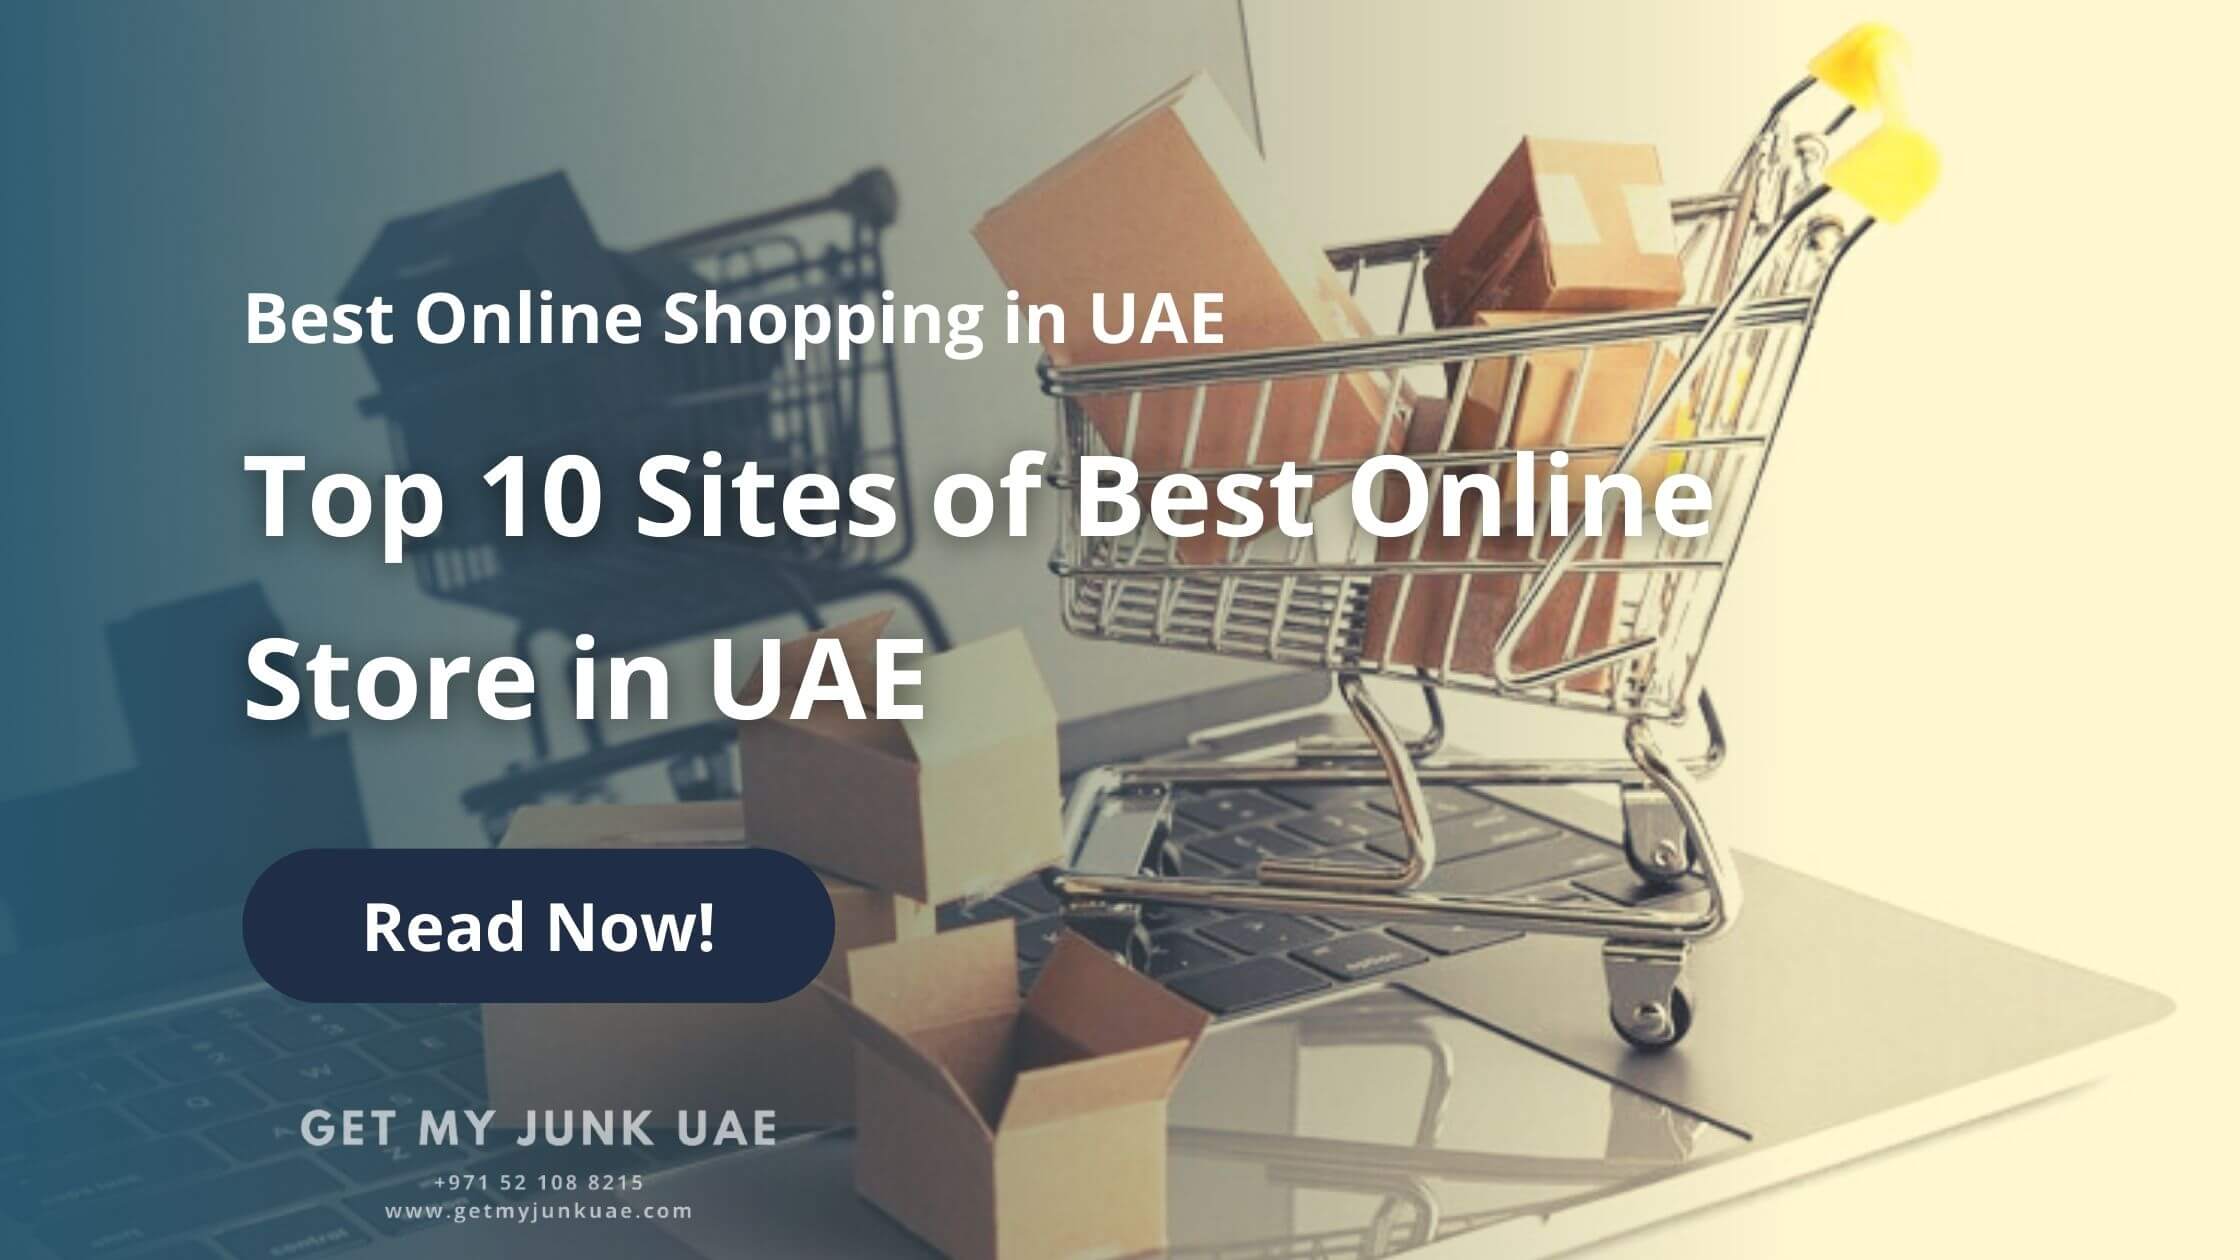 Best Online Shopping in UAE: Top 10 Sites of Best Online Store in Dubai UAE